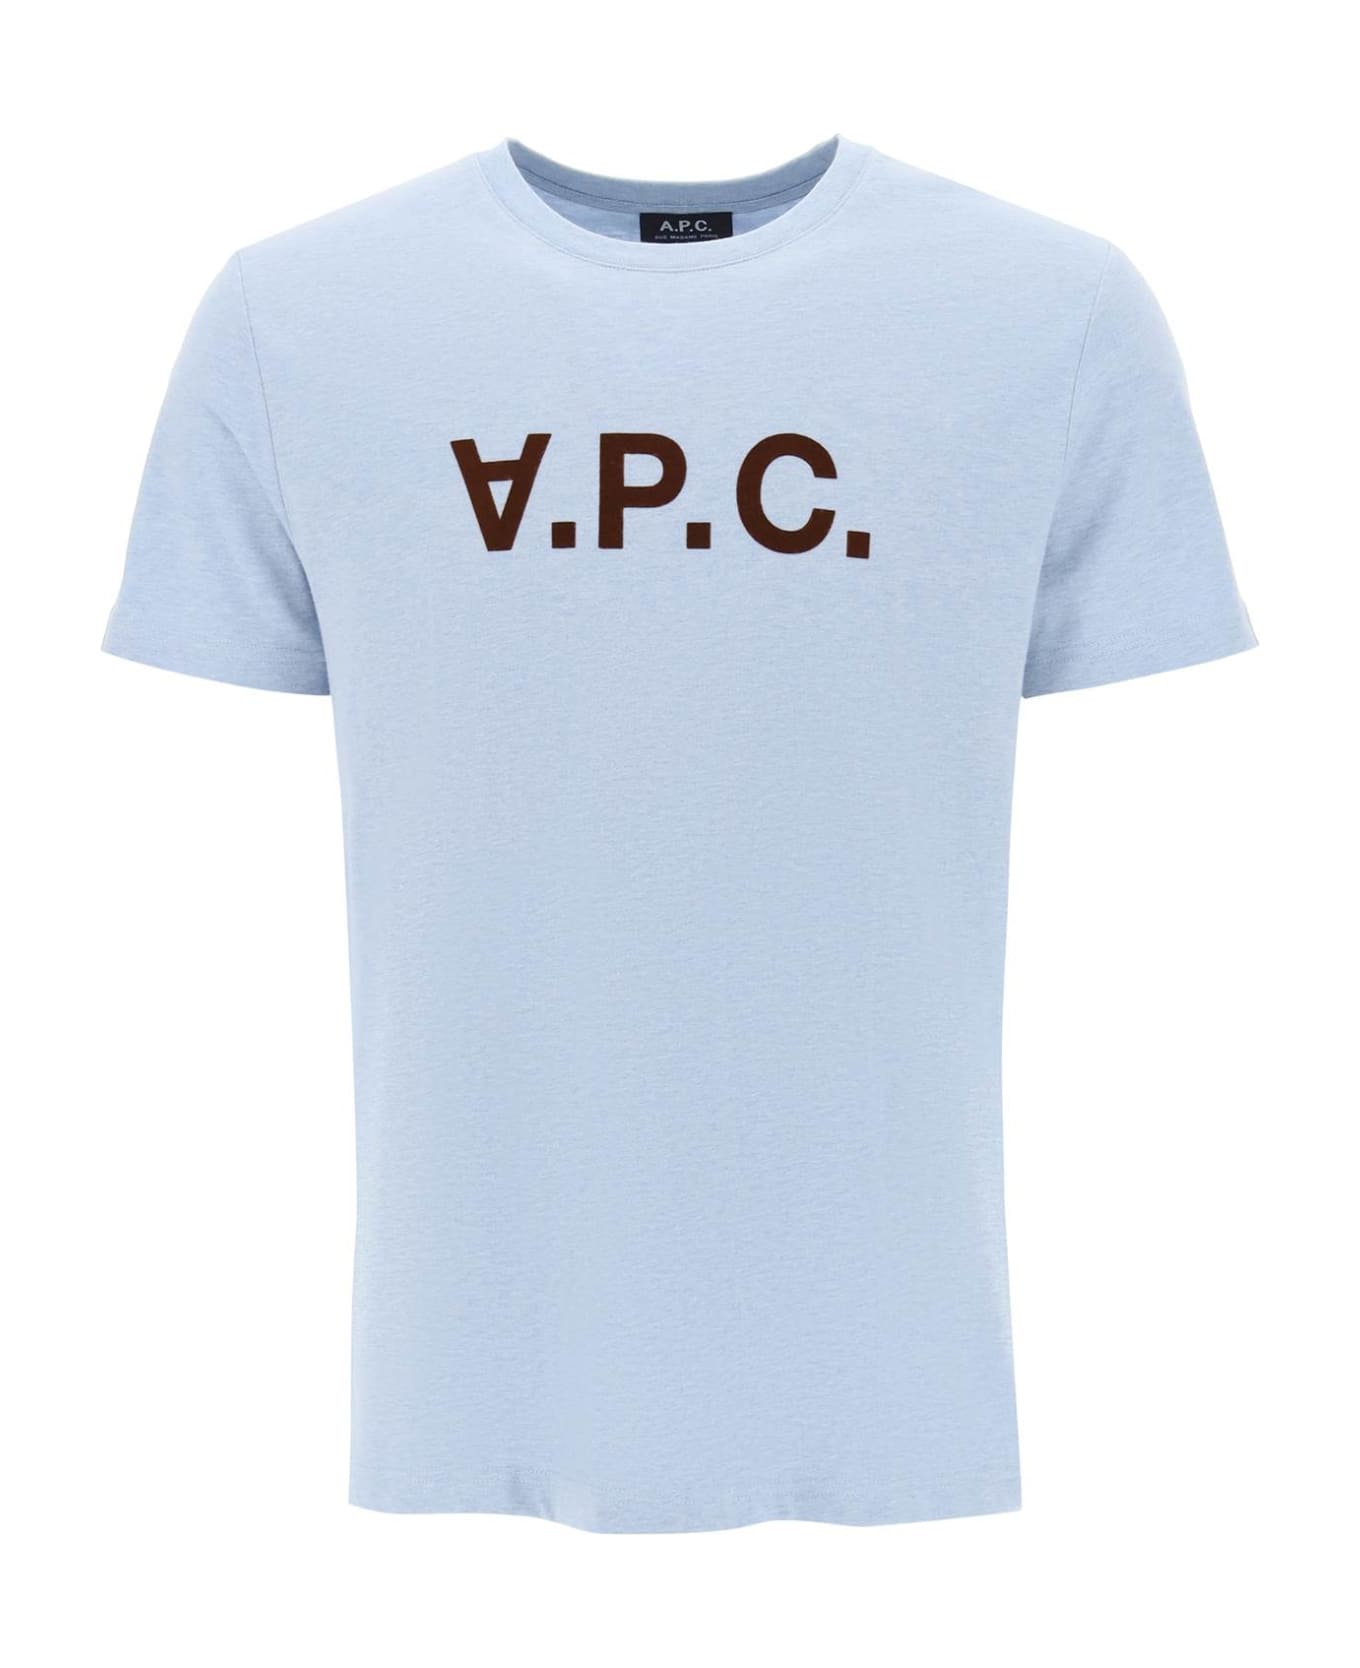 A.P.C. V.p.c. Logo T-shirt - INDIGO DELAVE